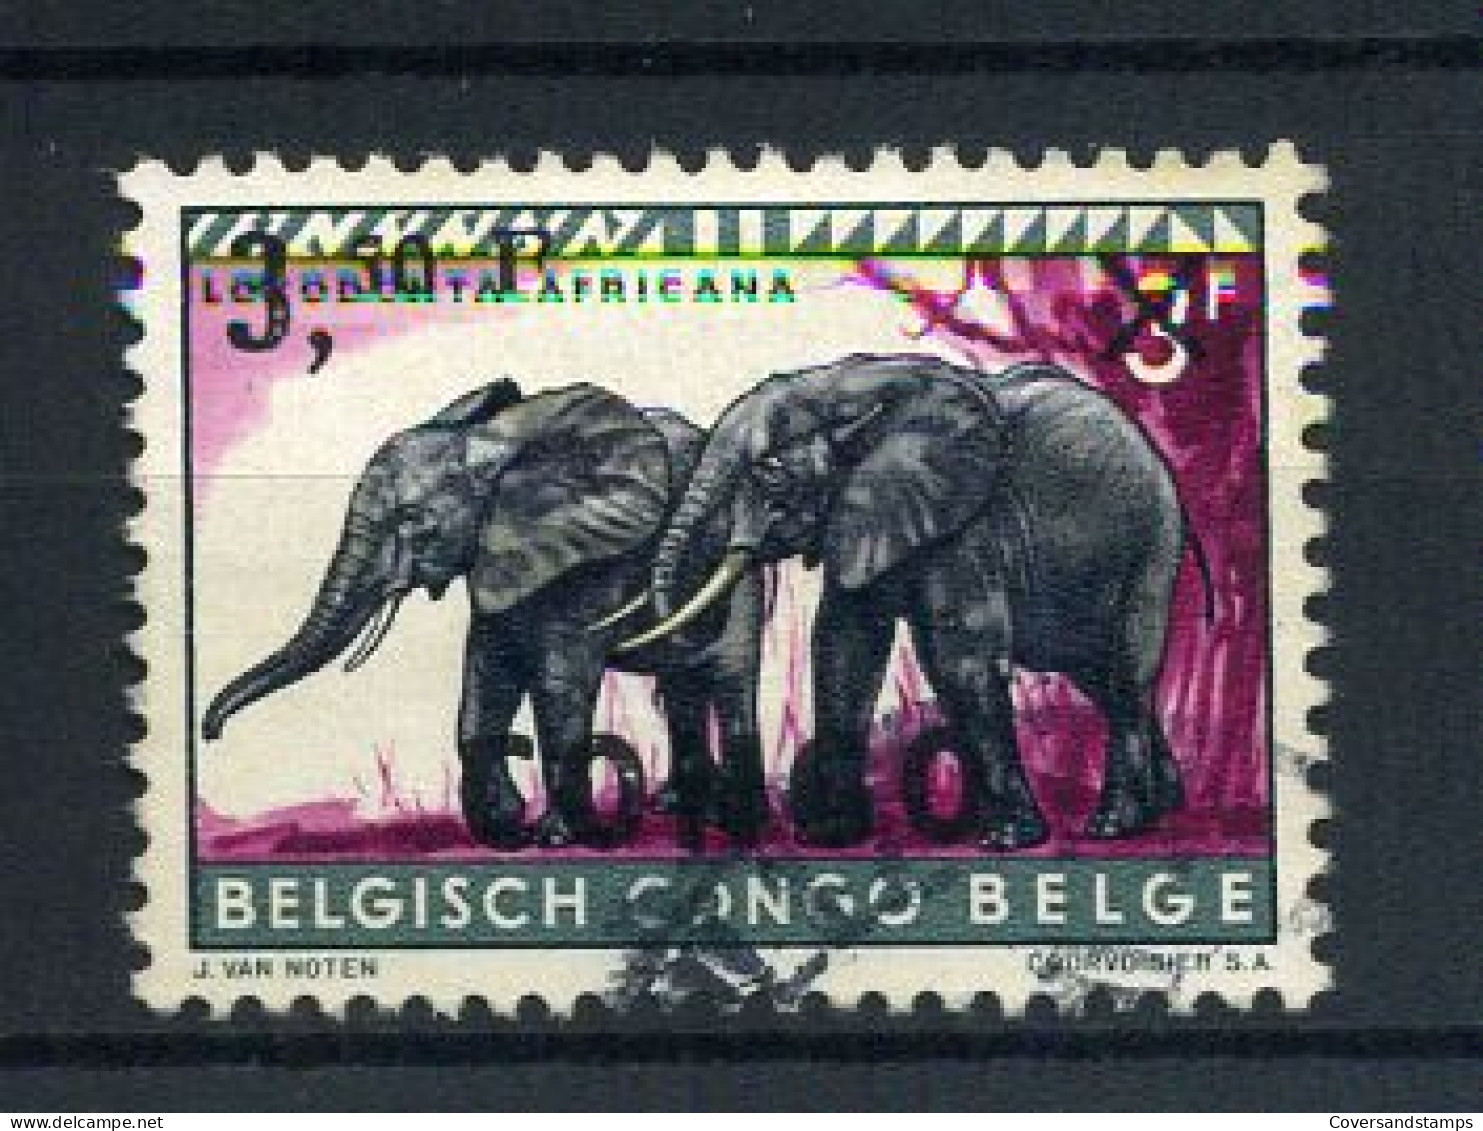 Republiek Congo / République Du Congo 407 - Gest / Obl / Used - Used Stamps